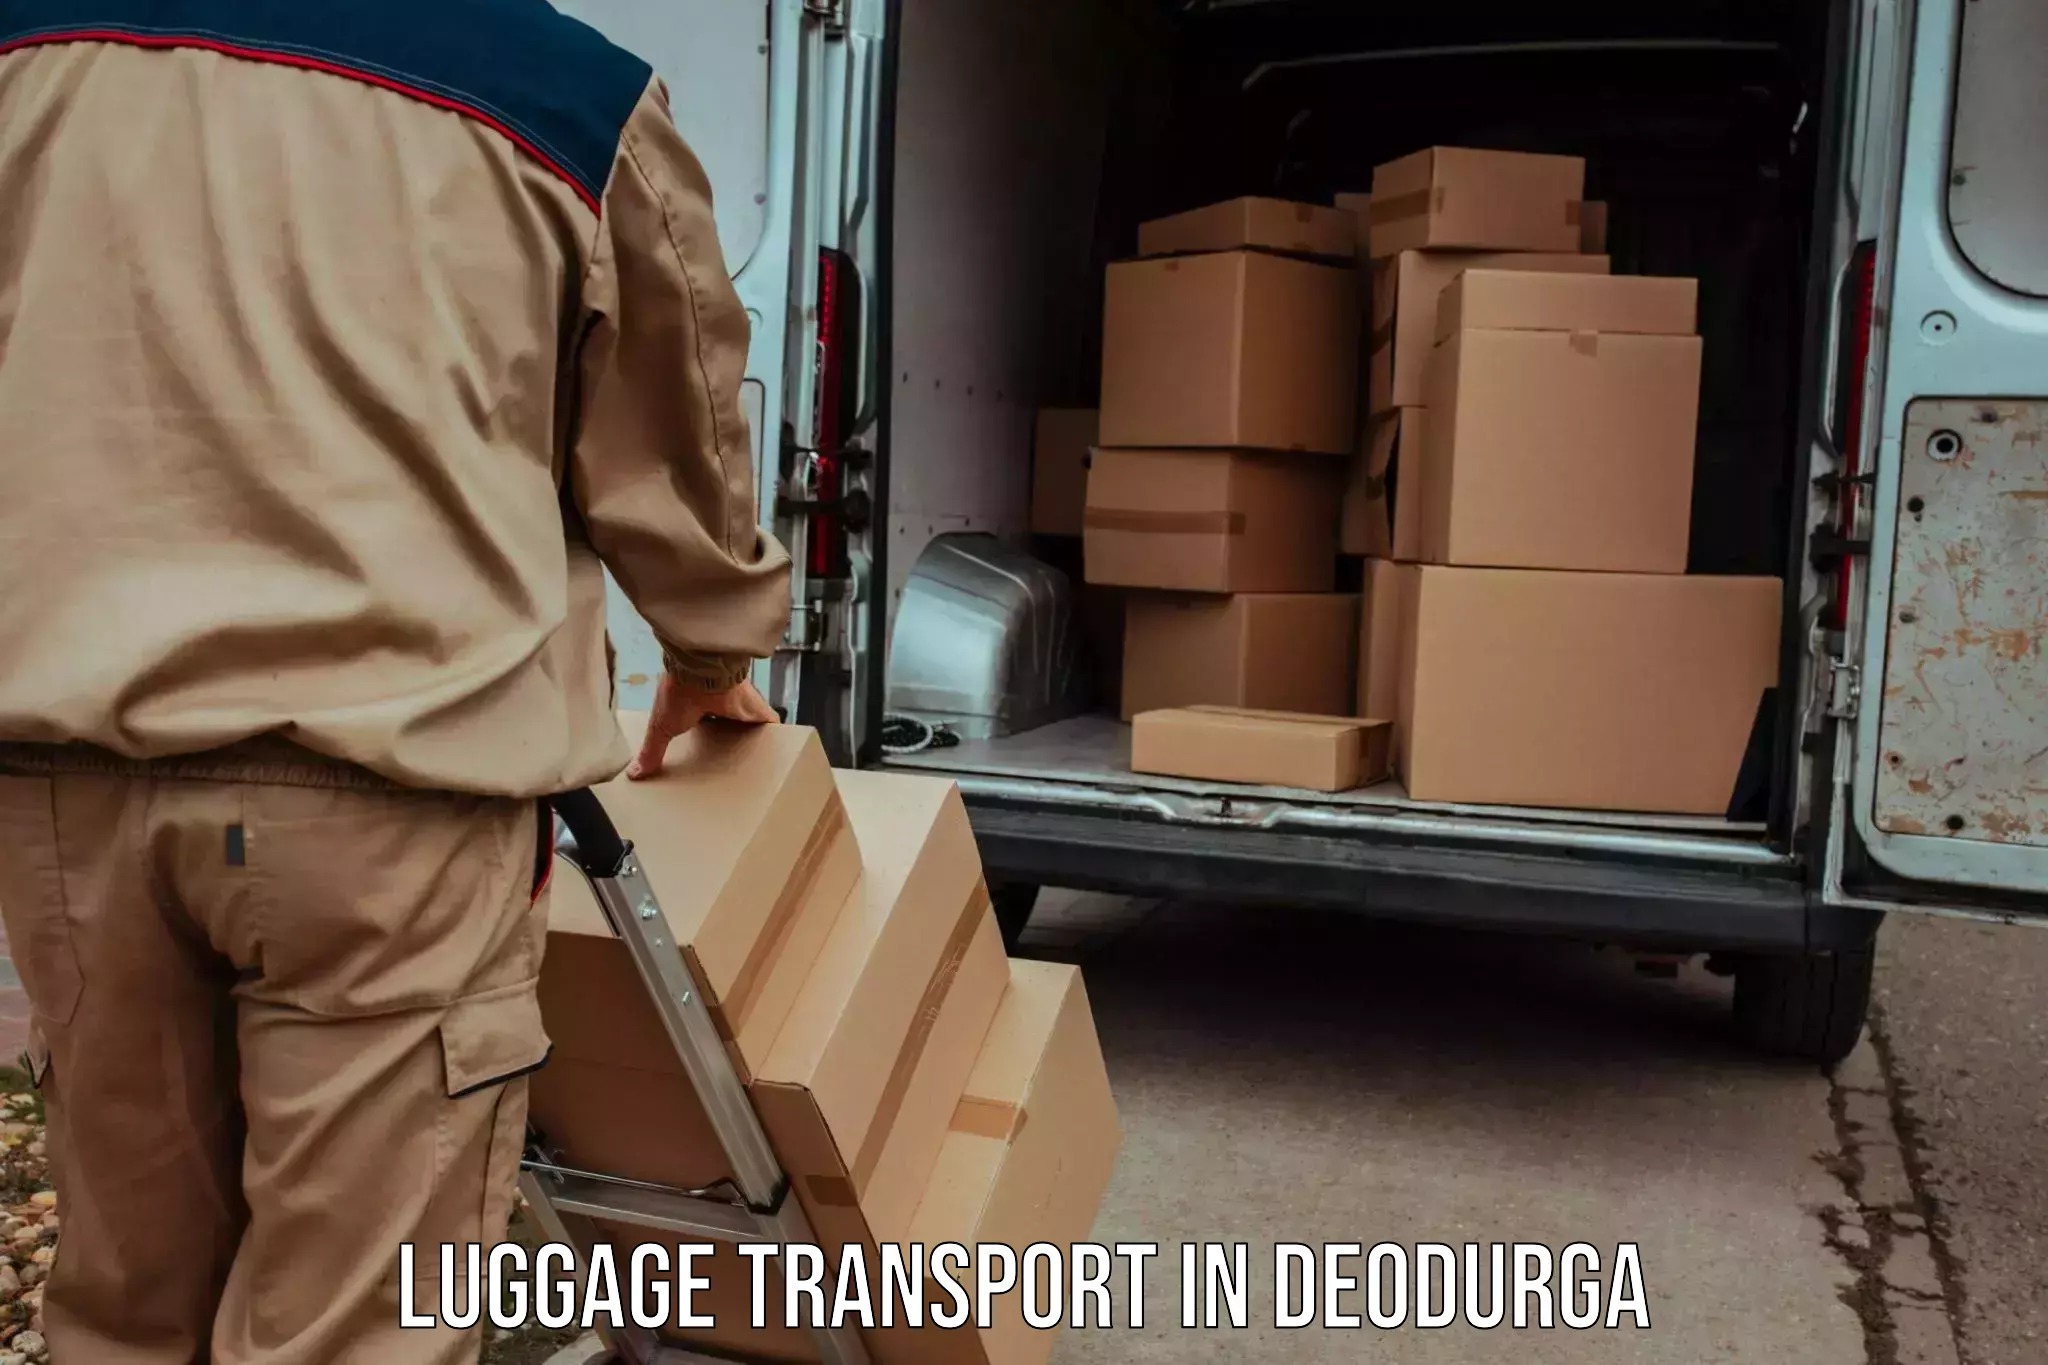 Luggage transport consultancy in Deodurga